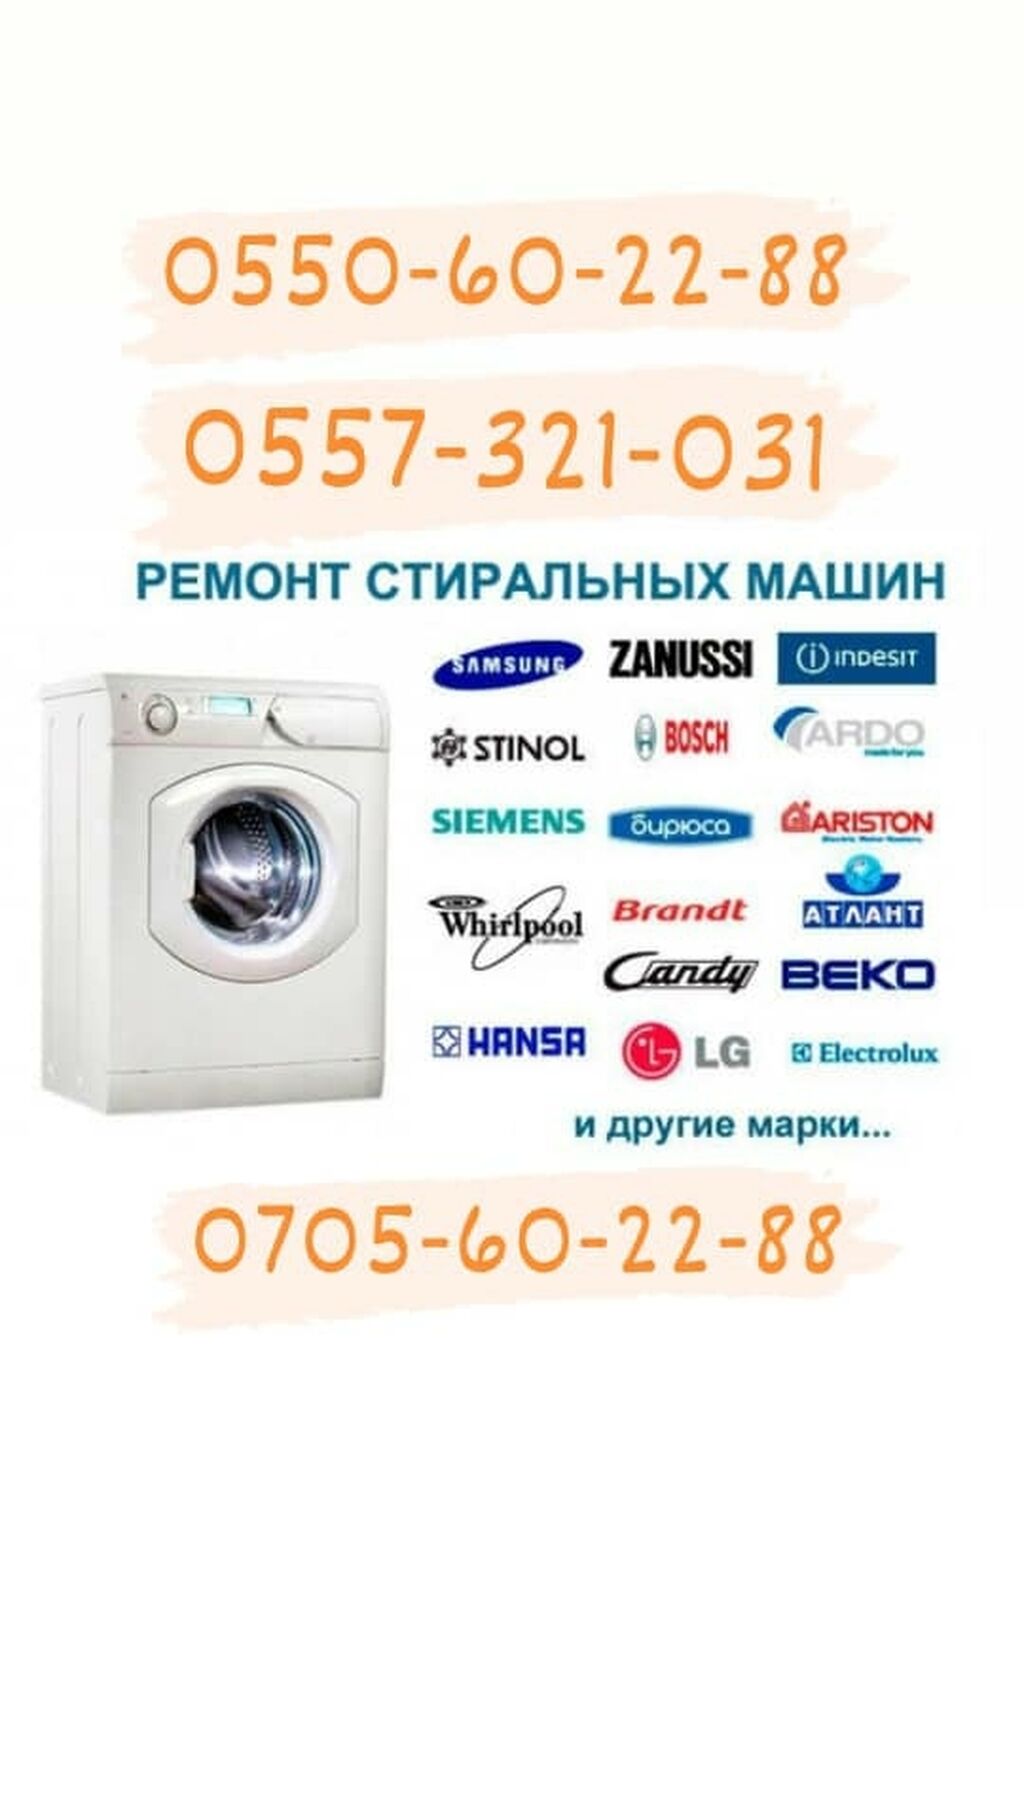 Ремонт стиральных машин Brandt в Москве на дому, цена ремонта стиральной машины Брандт на YouDo